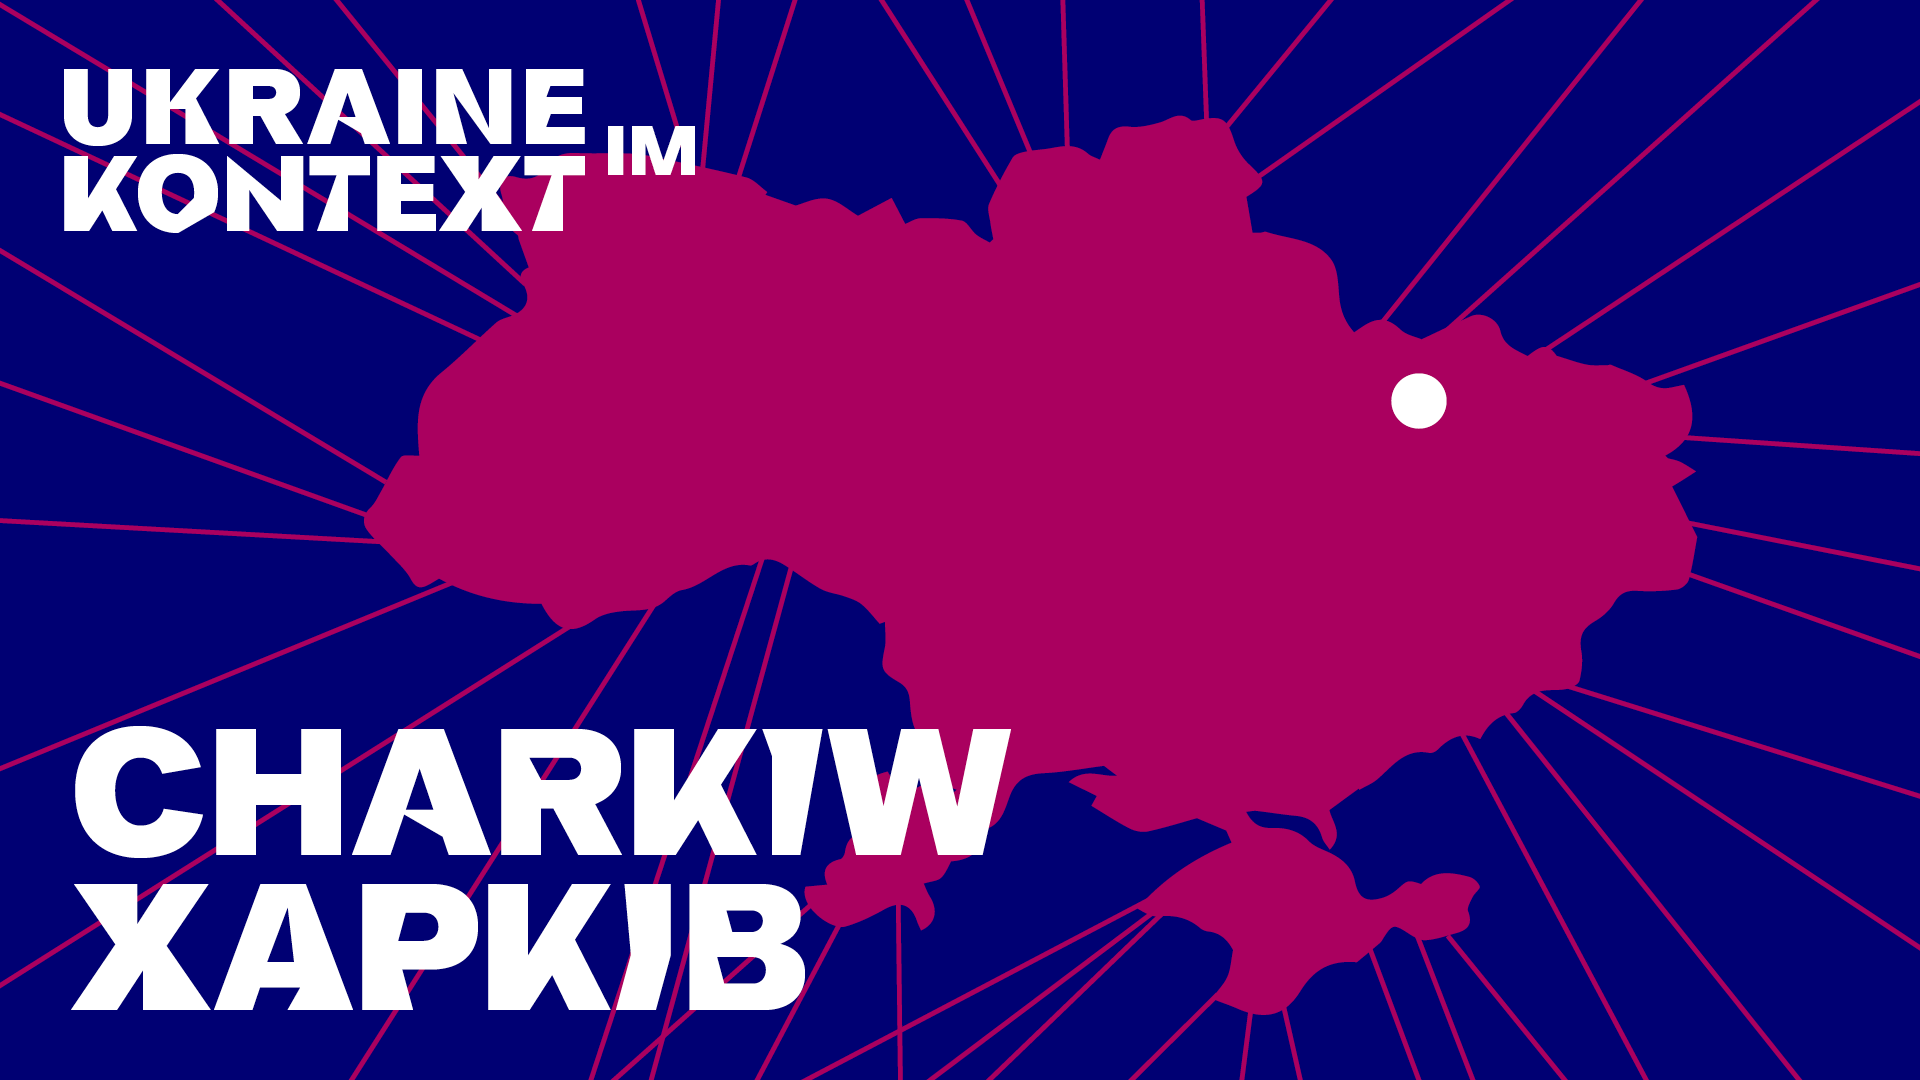 Visual: Die Umrisse der Ukraine in berry auf blauem Grund, darin in weißen Buchstaben der Text: Charkiw